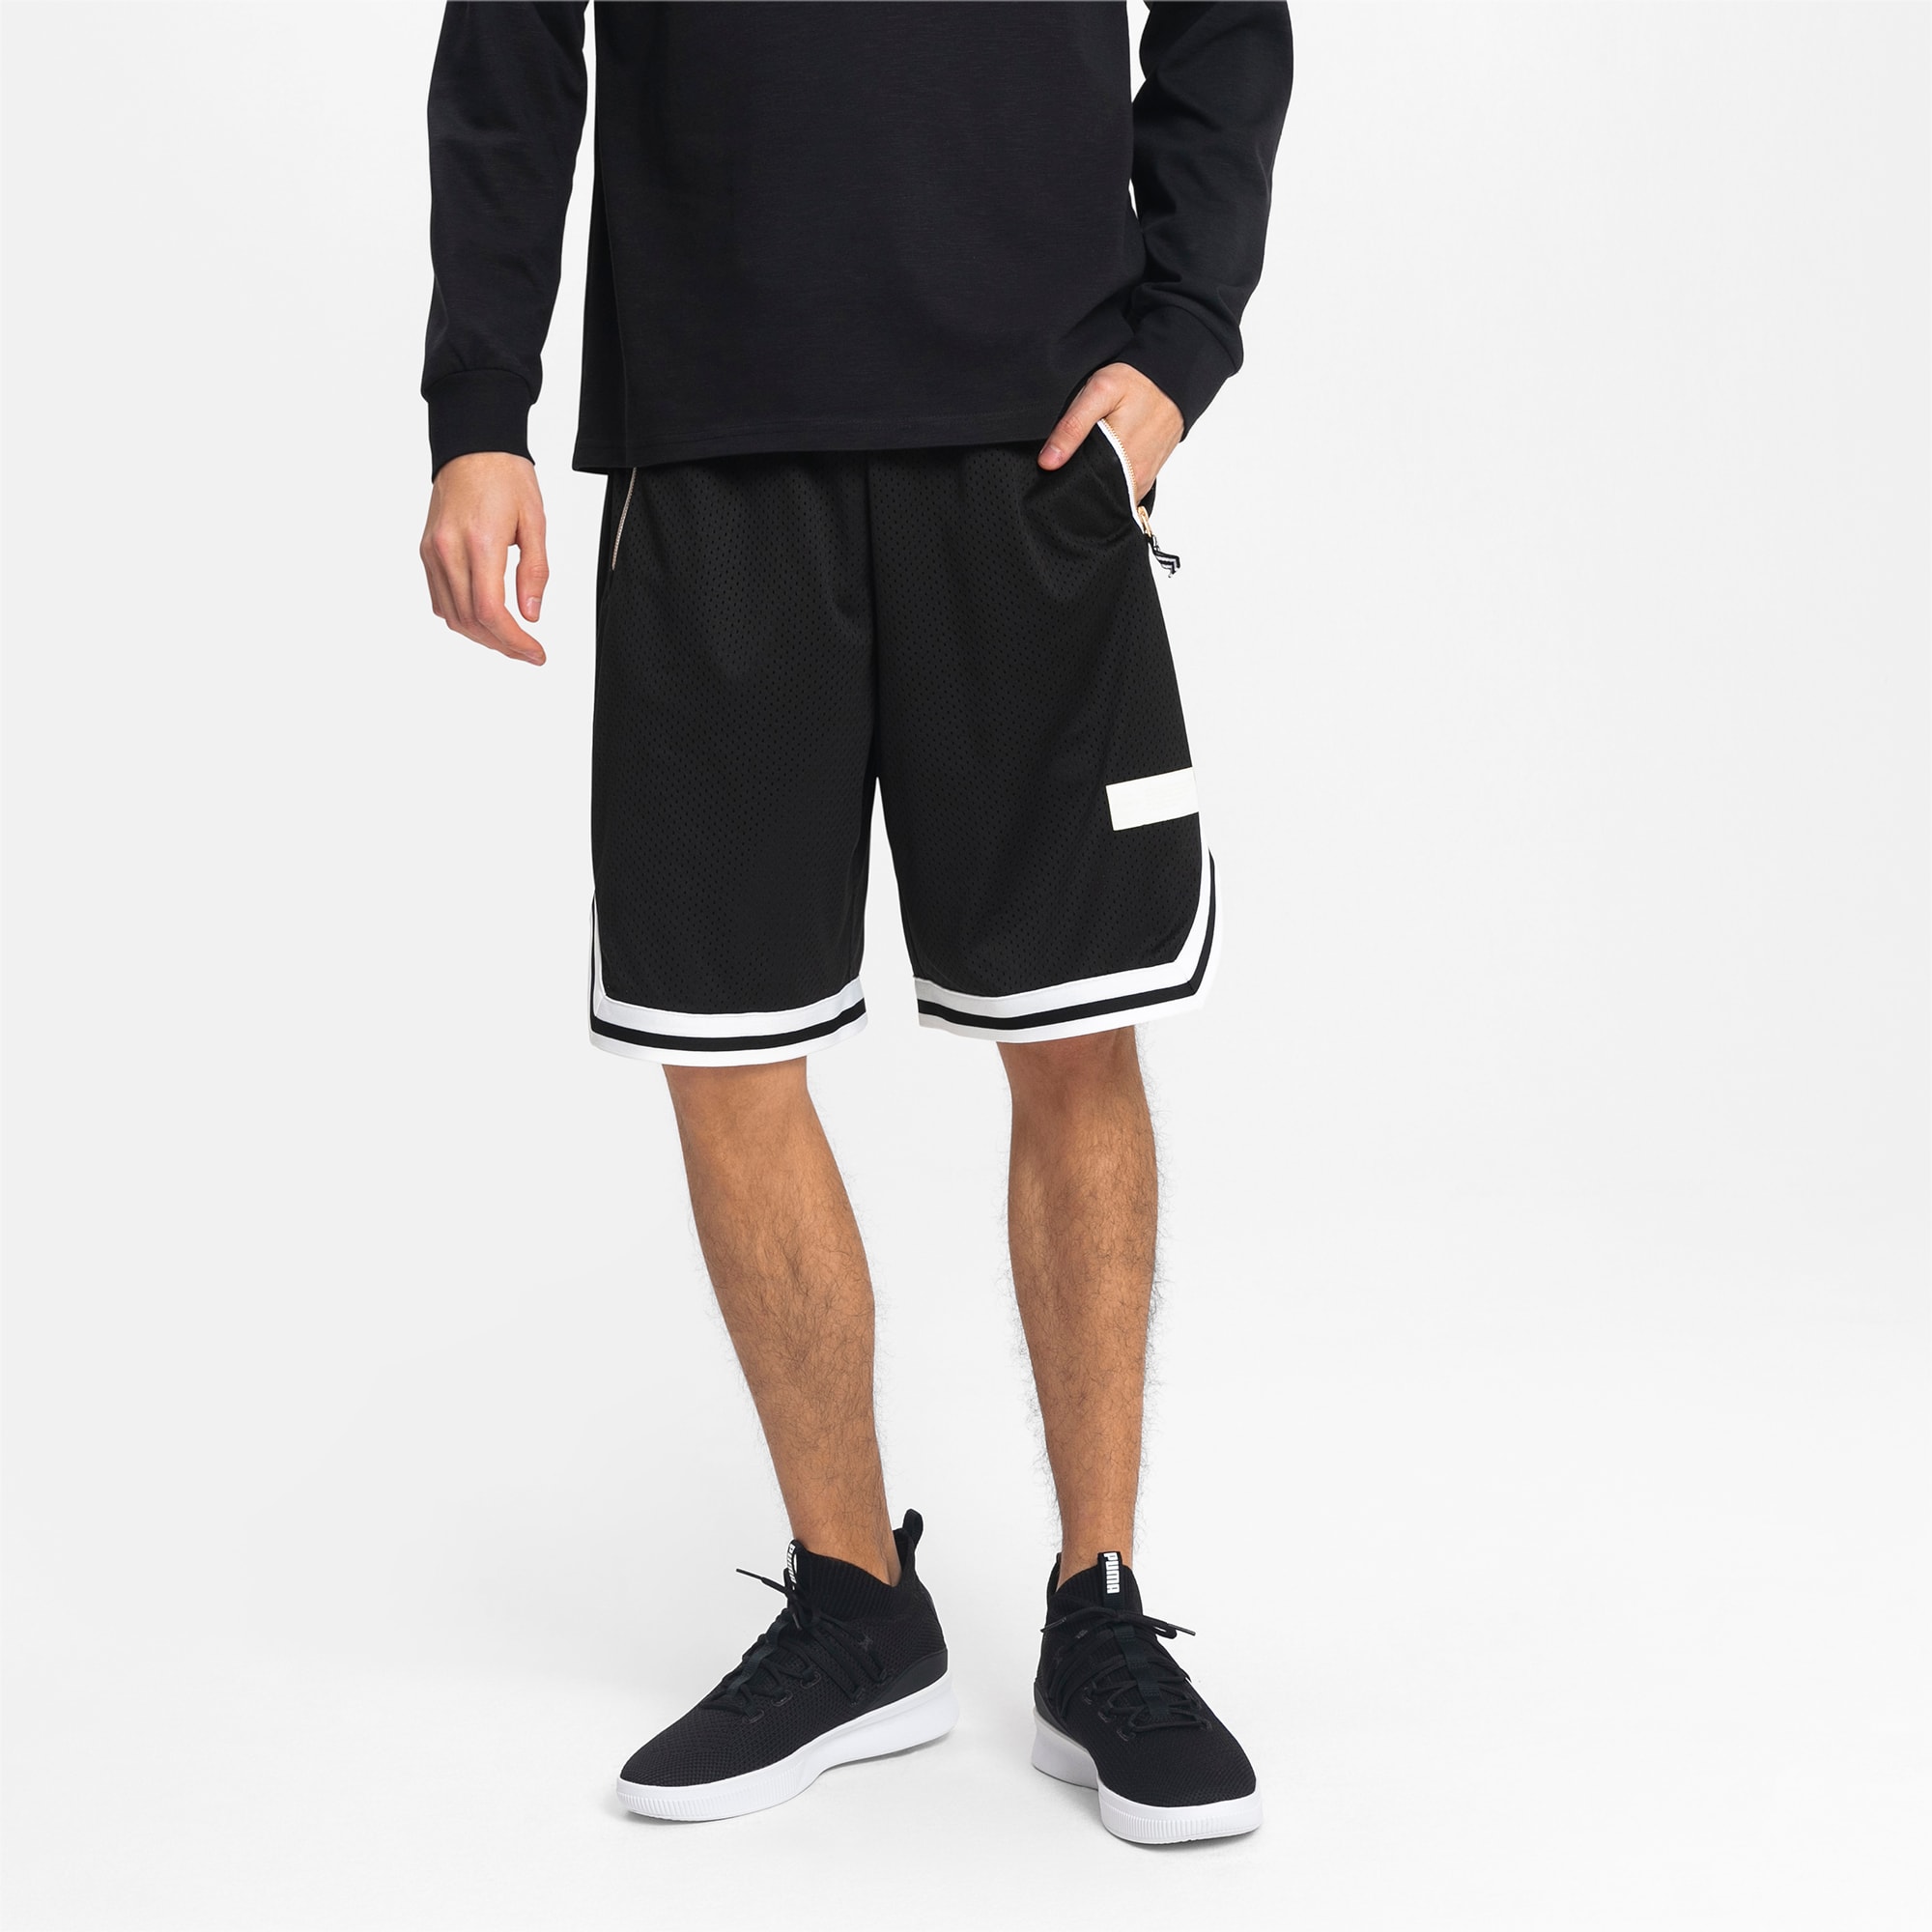 puma mens basketball shorts